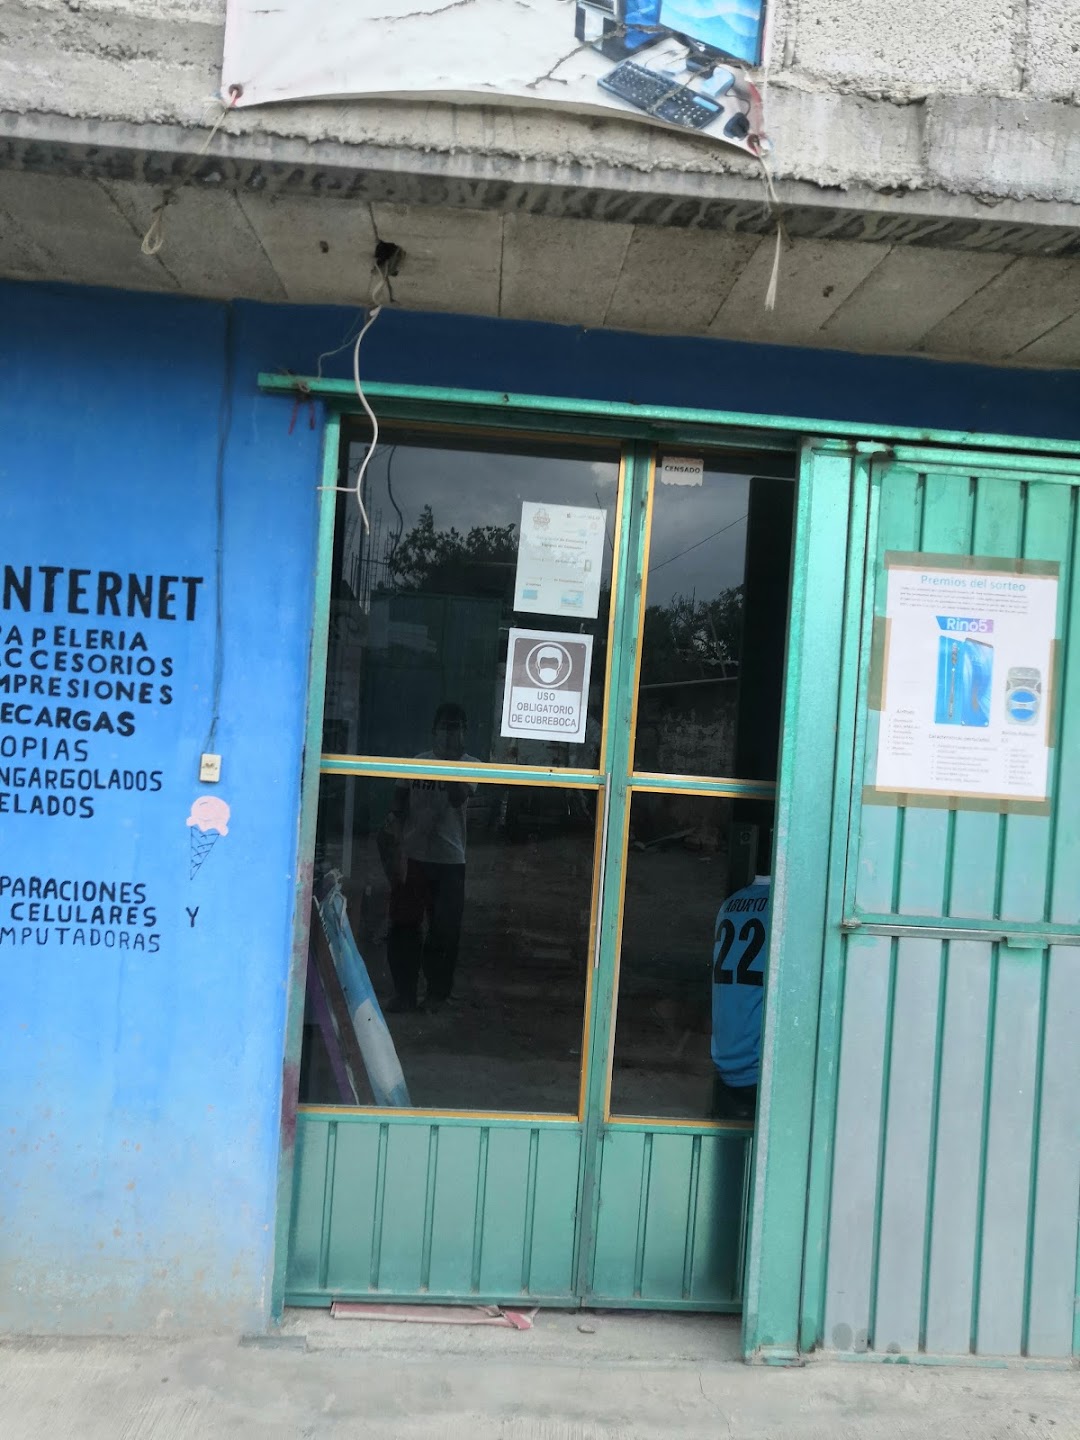 Internet y reparaciones